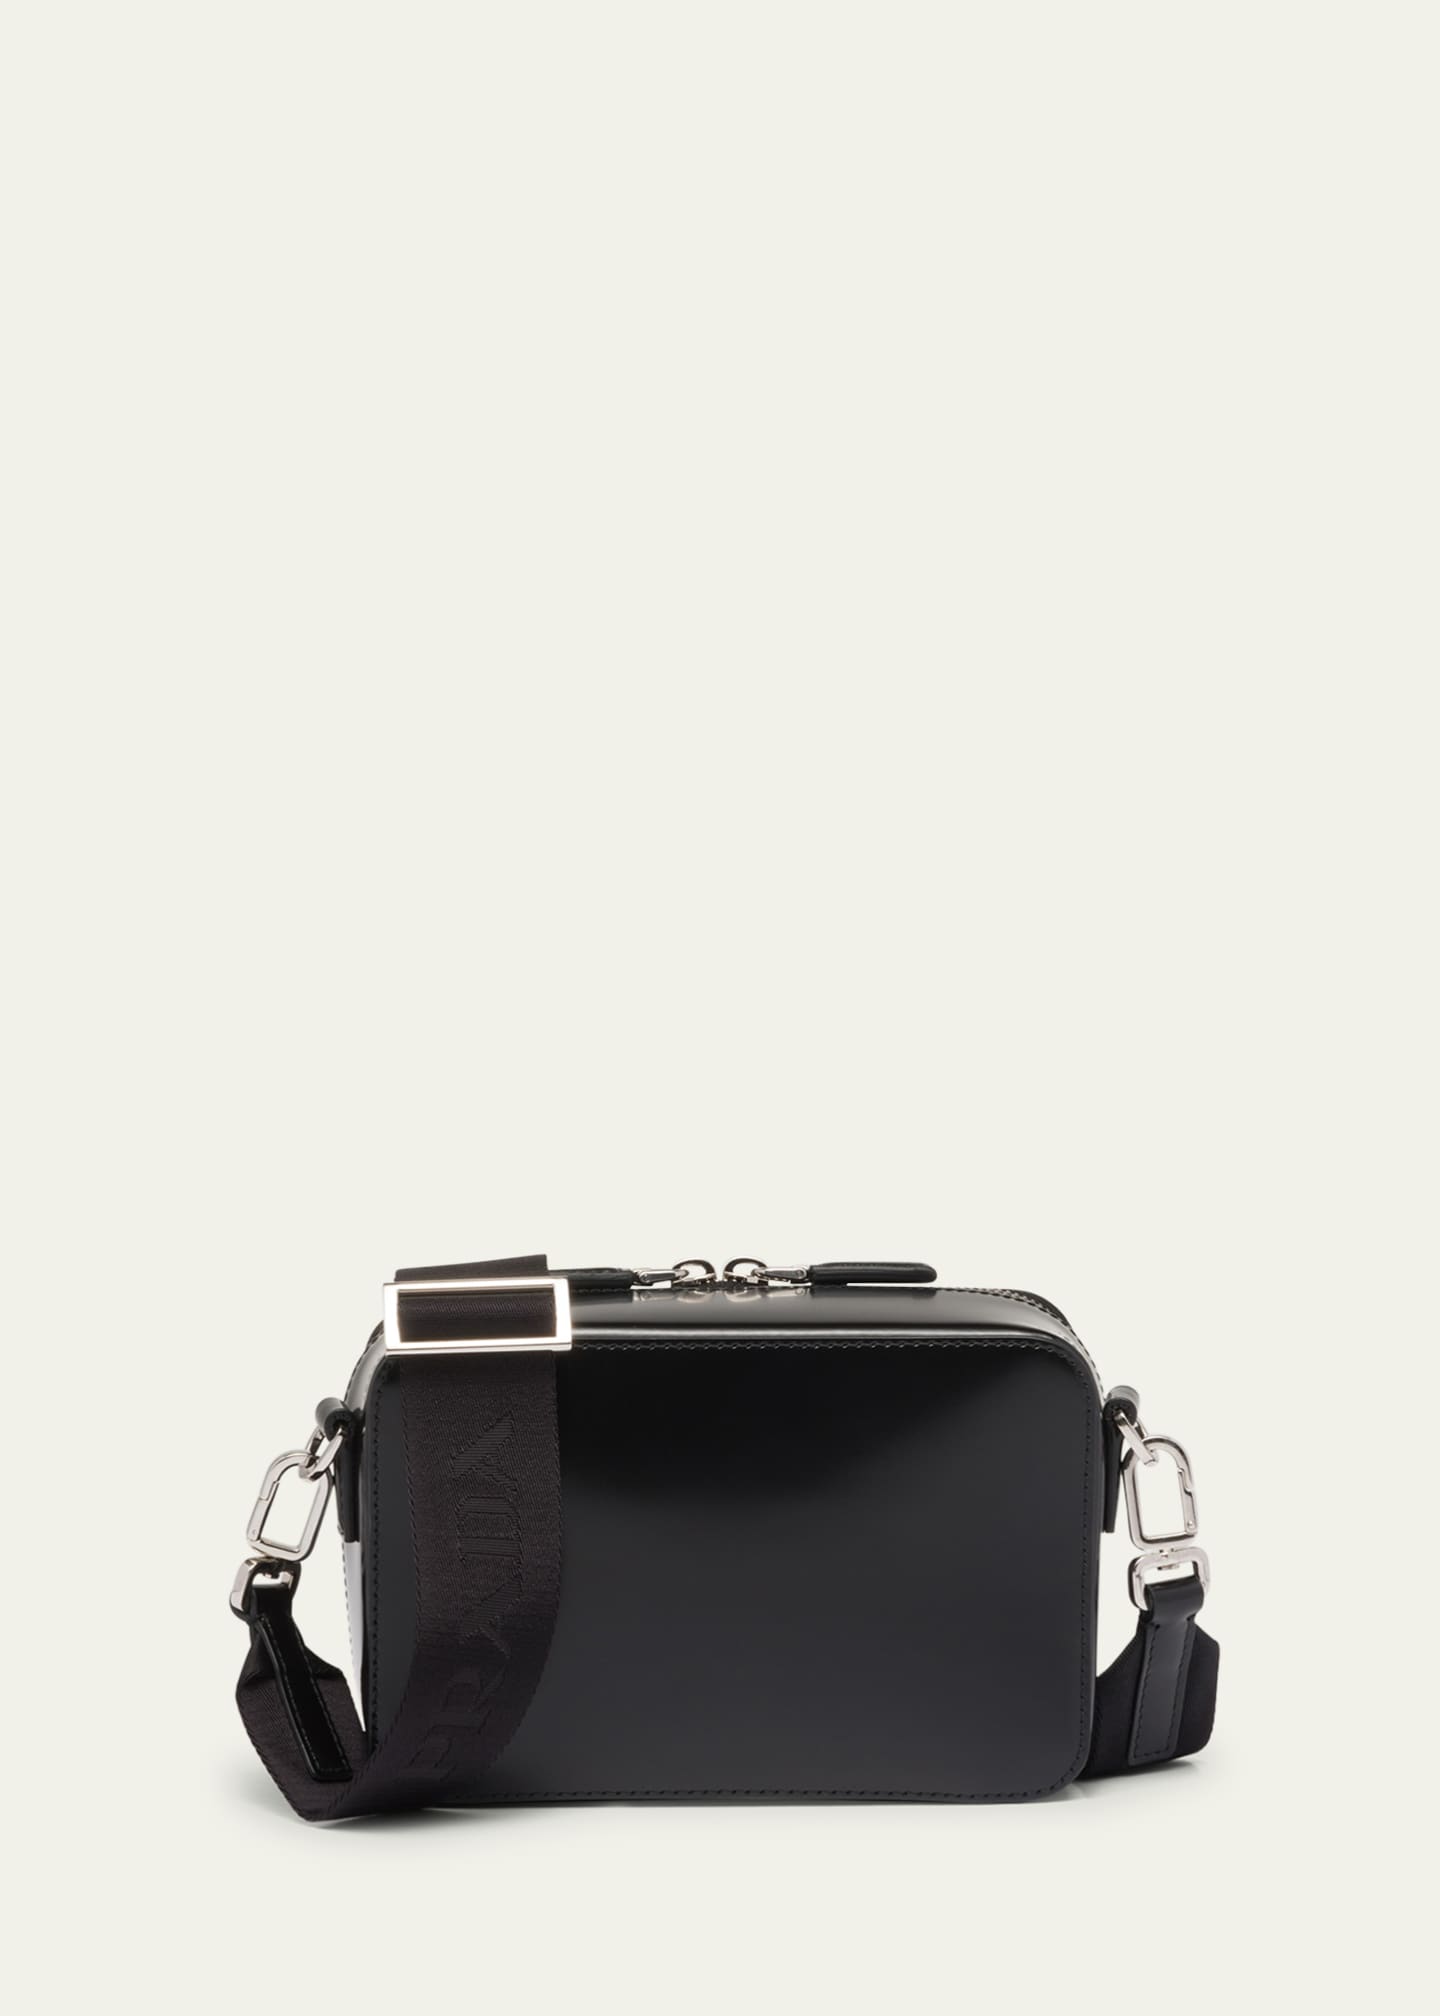 Mini leather crossbody bag in black - Prada